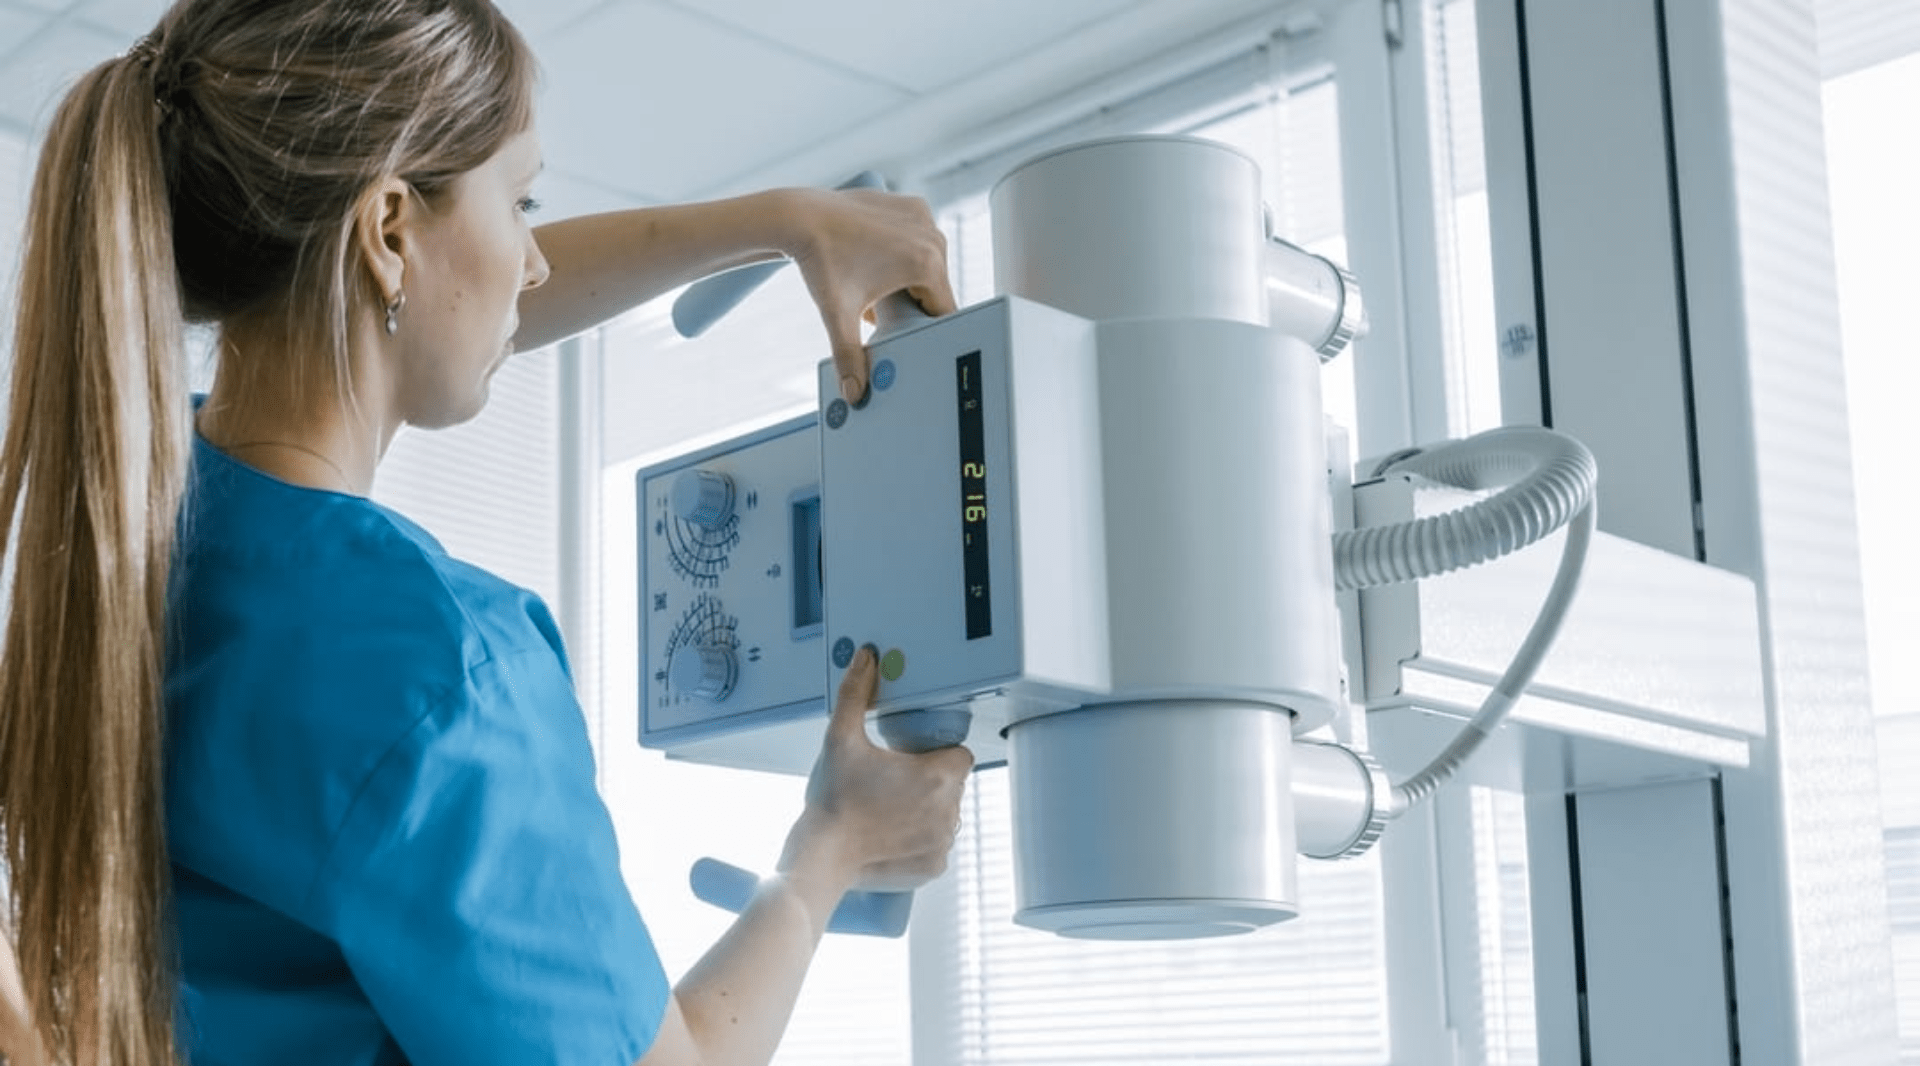 Medicina Diagnóstica: saiba como garantir a segurança em radiodiagnóstico